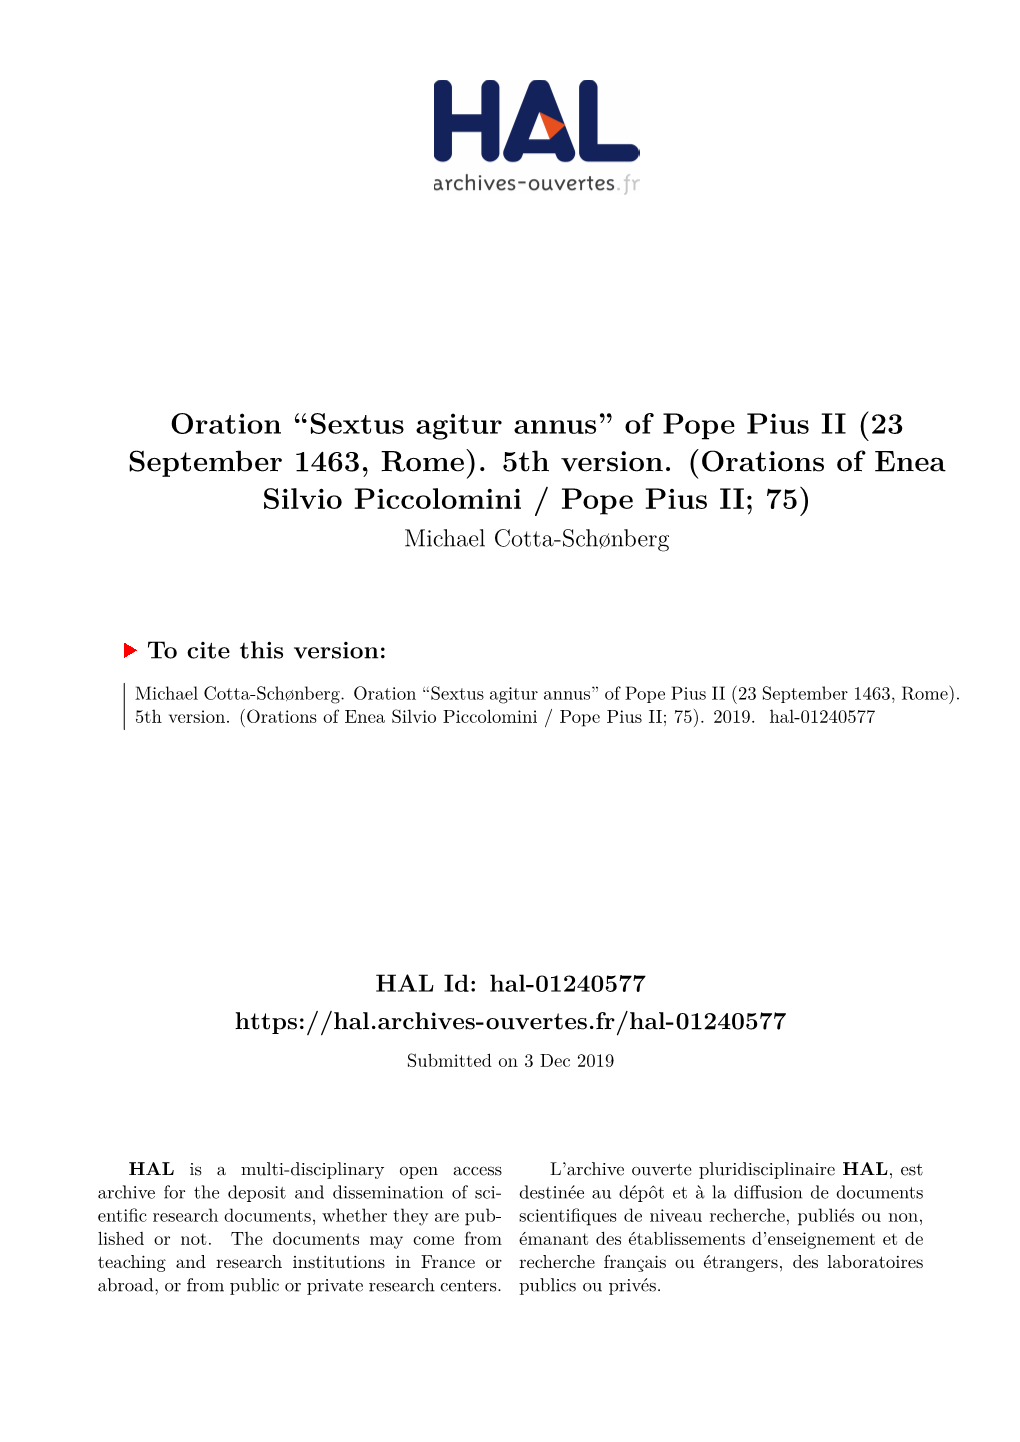 Sextus Agitur Annus” of Pope Pius II (23 September 1463, Rome)